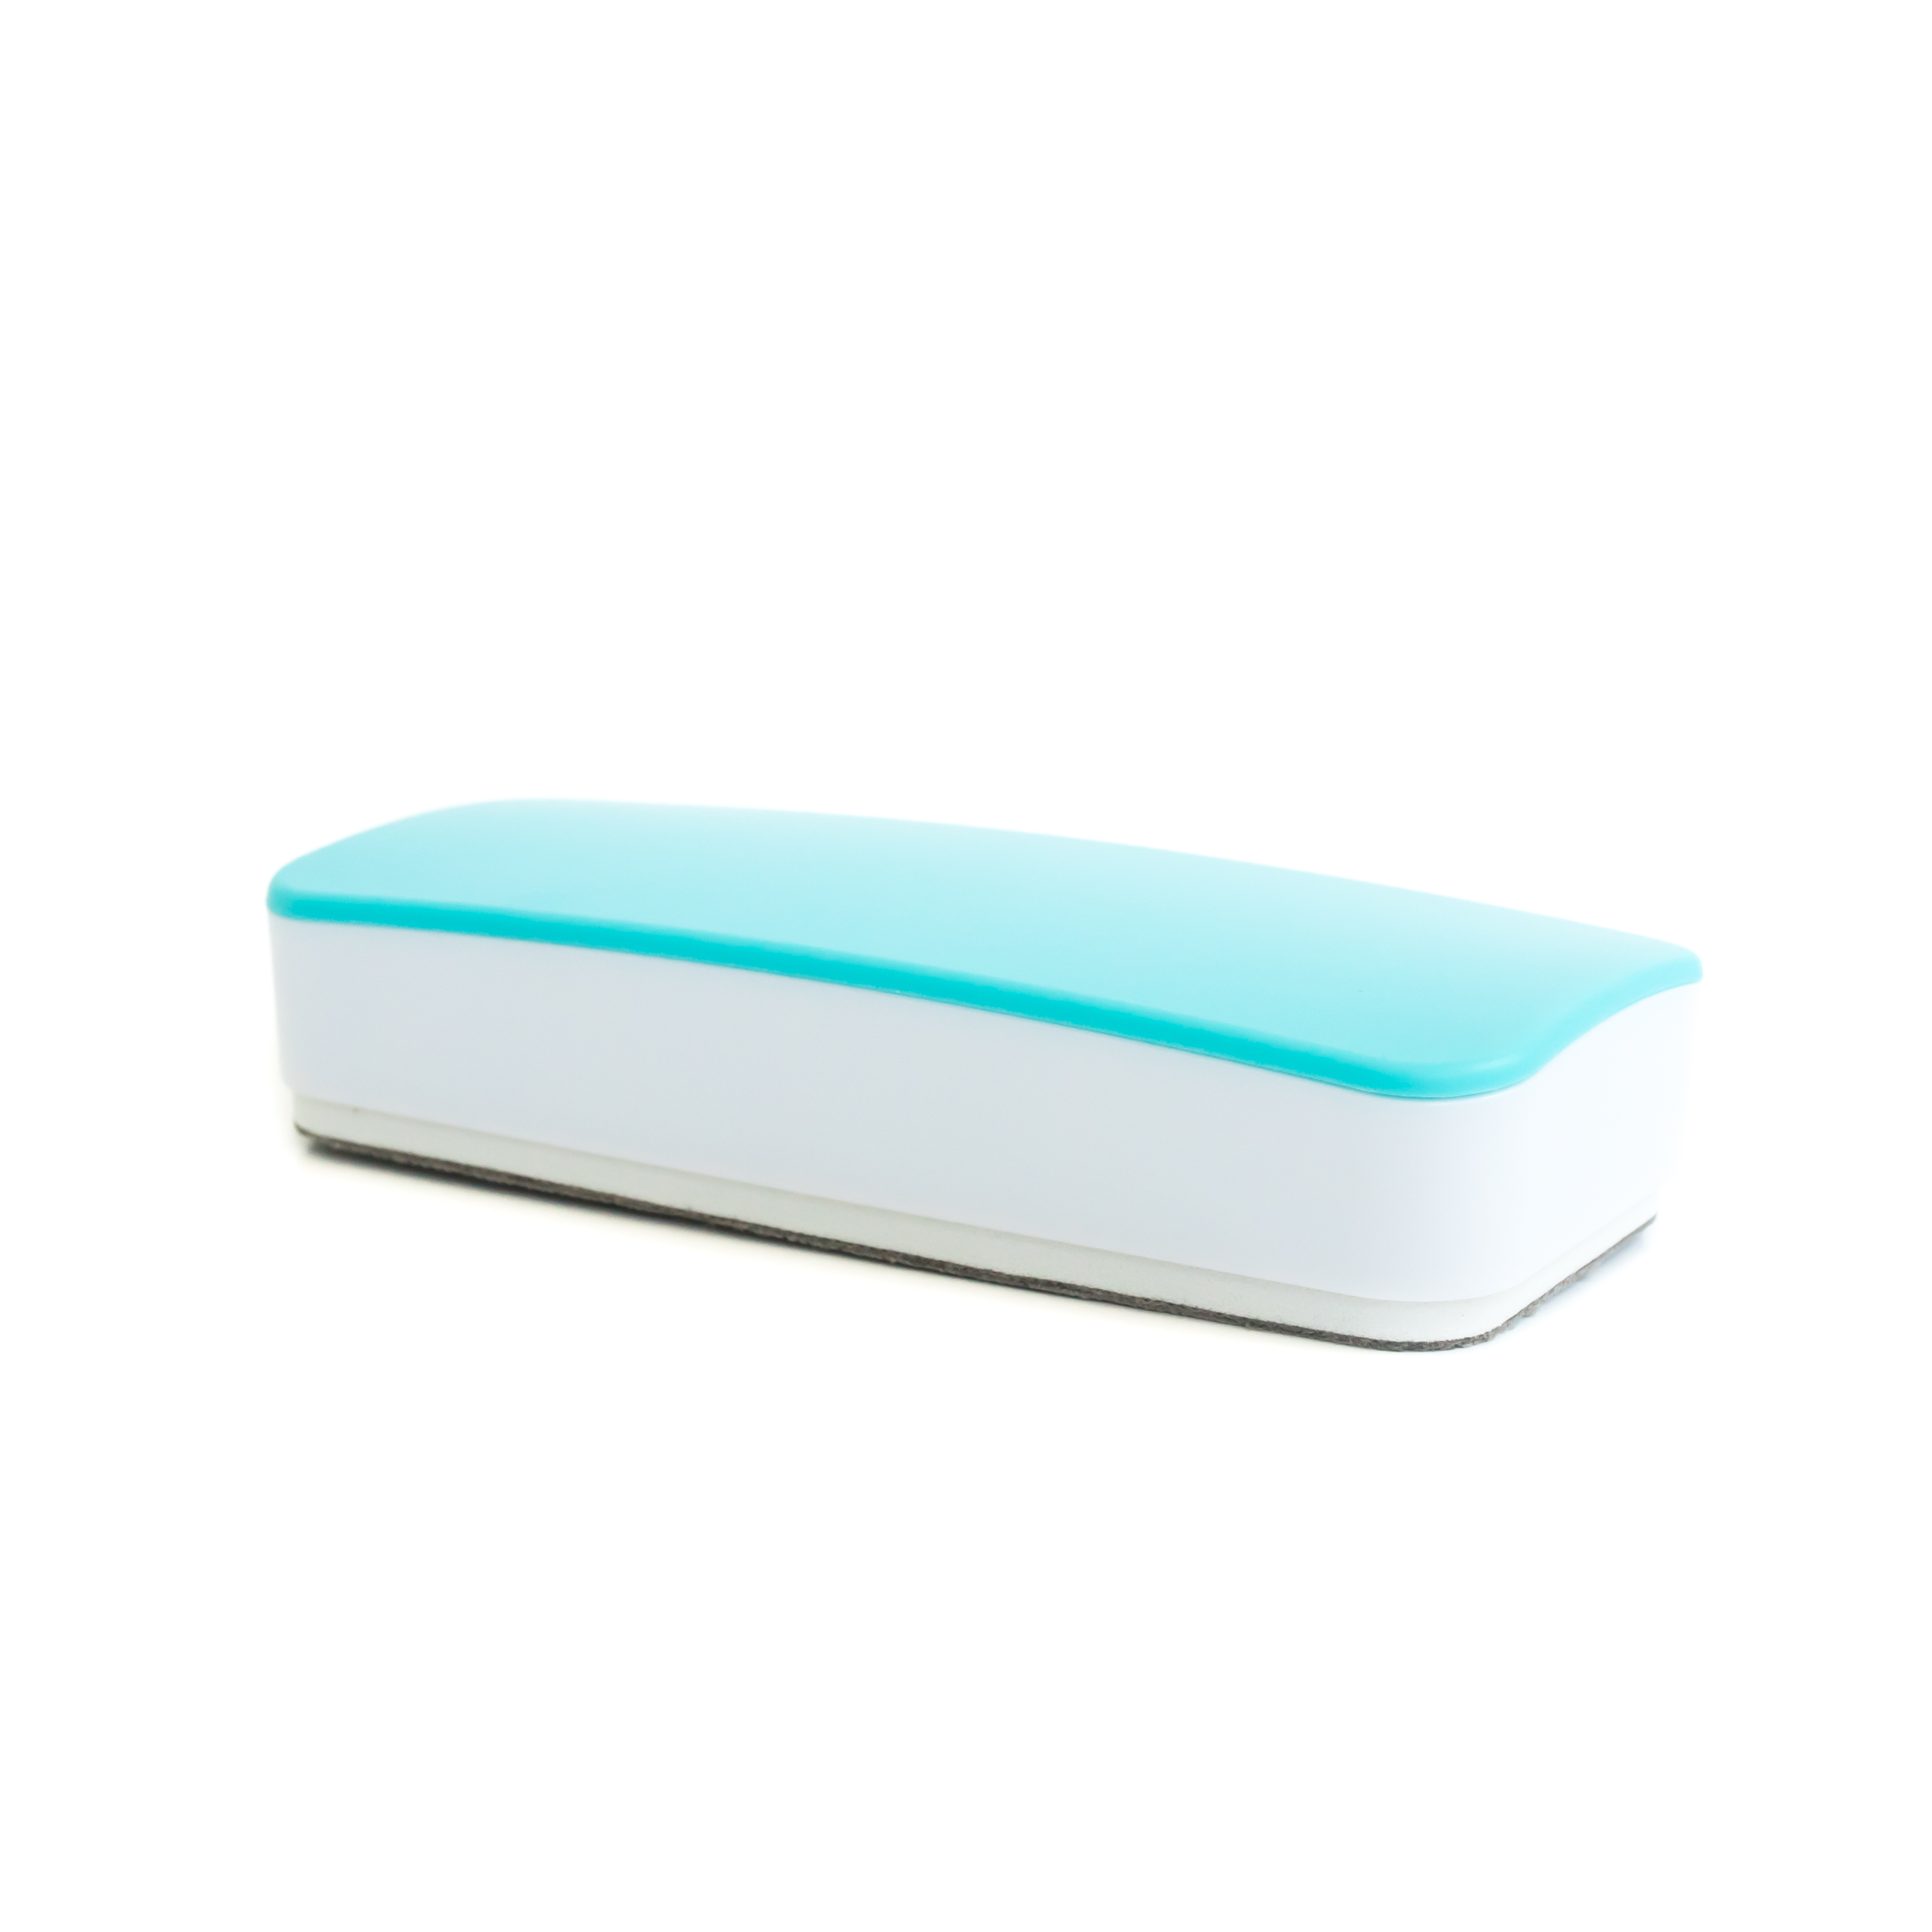 WallDeca Magnetic Premium Dry Eraser, Felt Bottom Surface, Made for White Boards (Green)